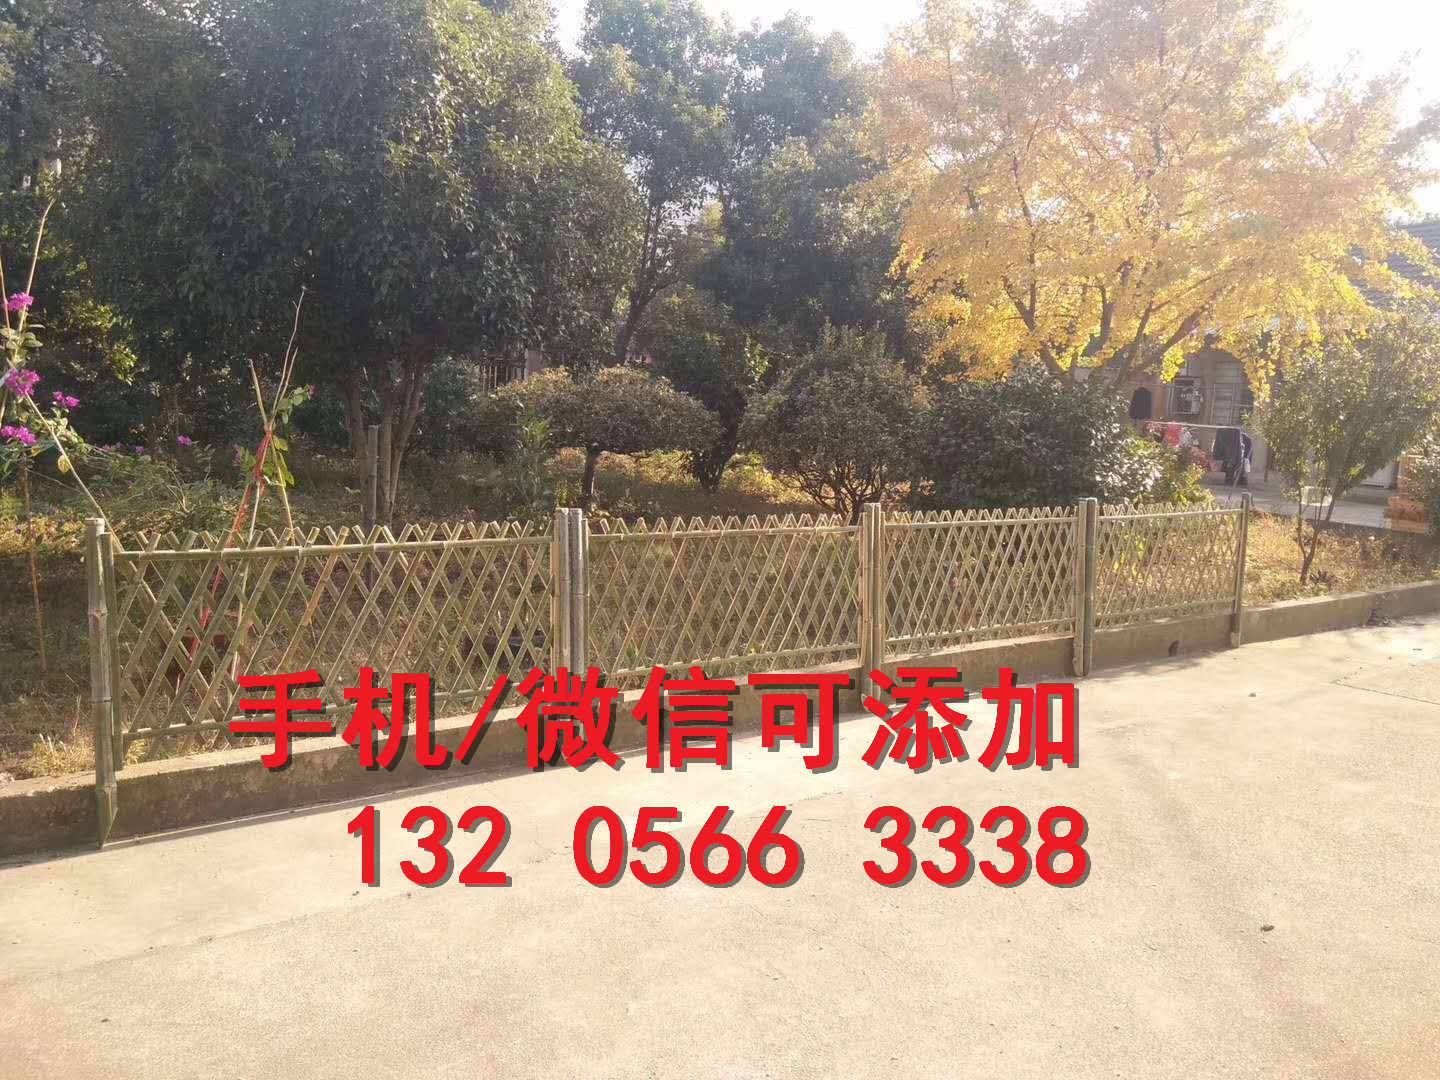 北京平谷护栏草坪户外庭院花园装饰竹篱笆竹子护栏